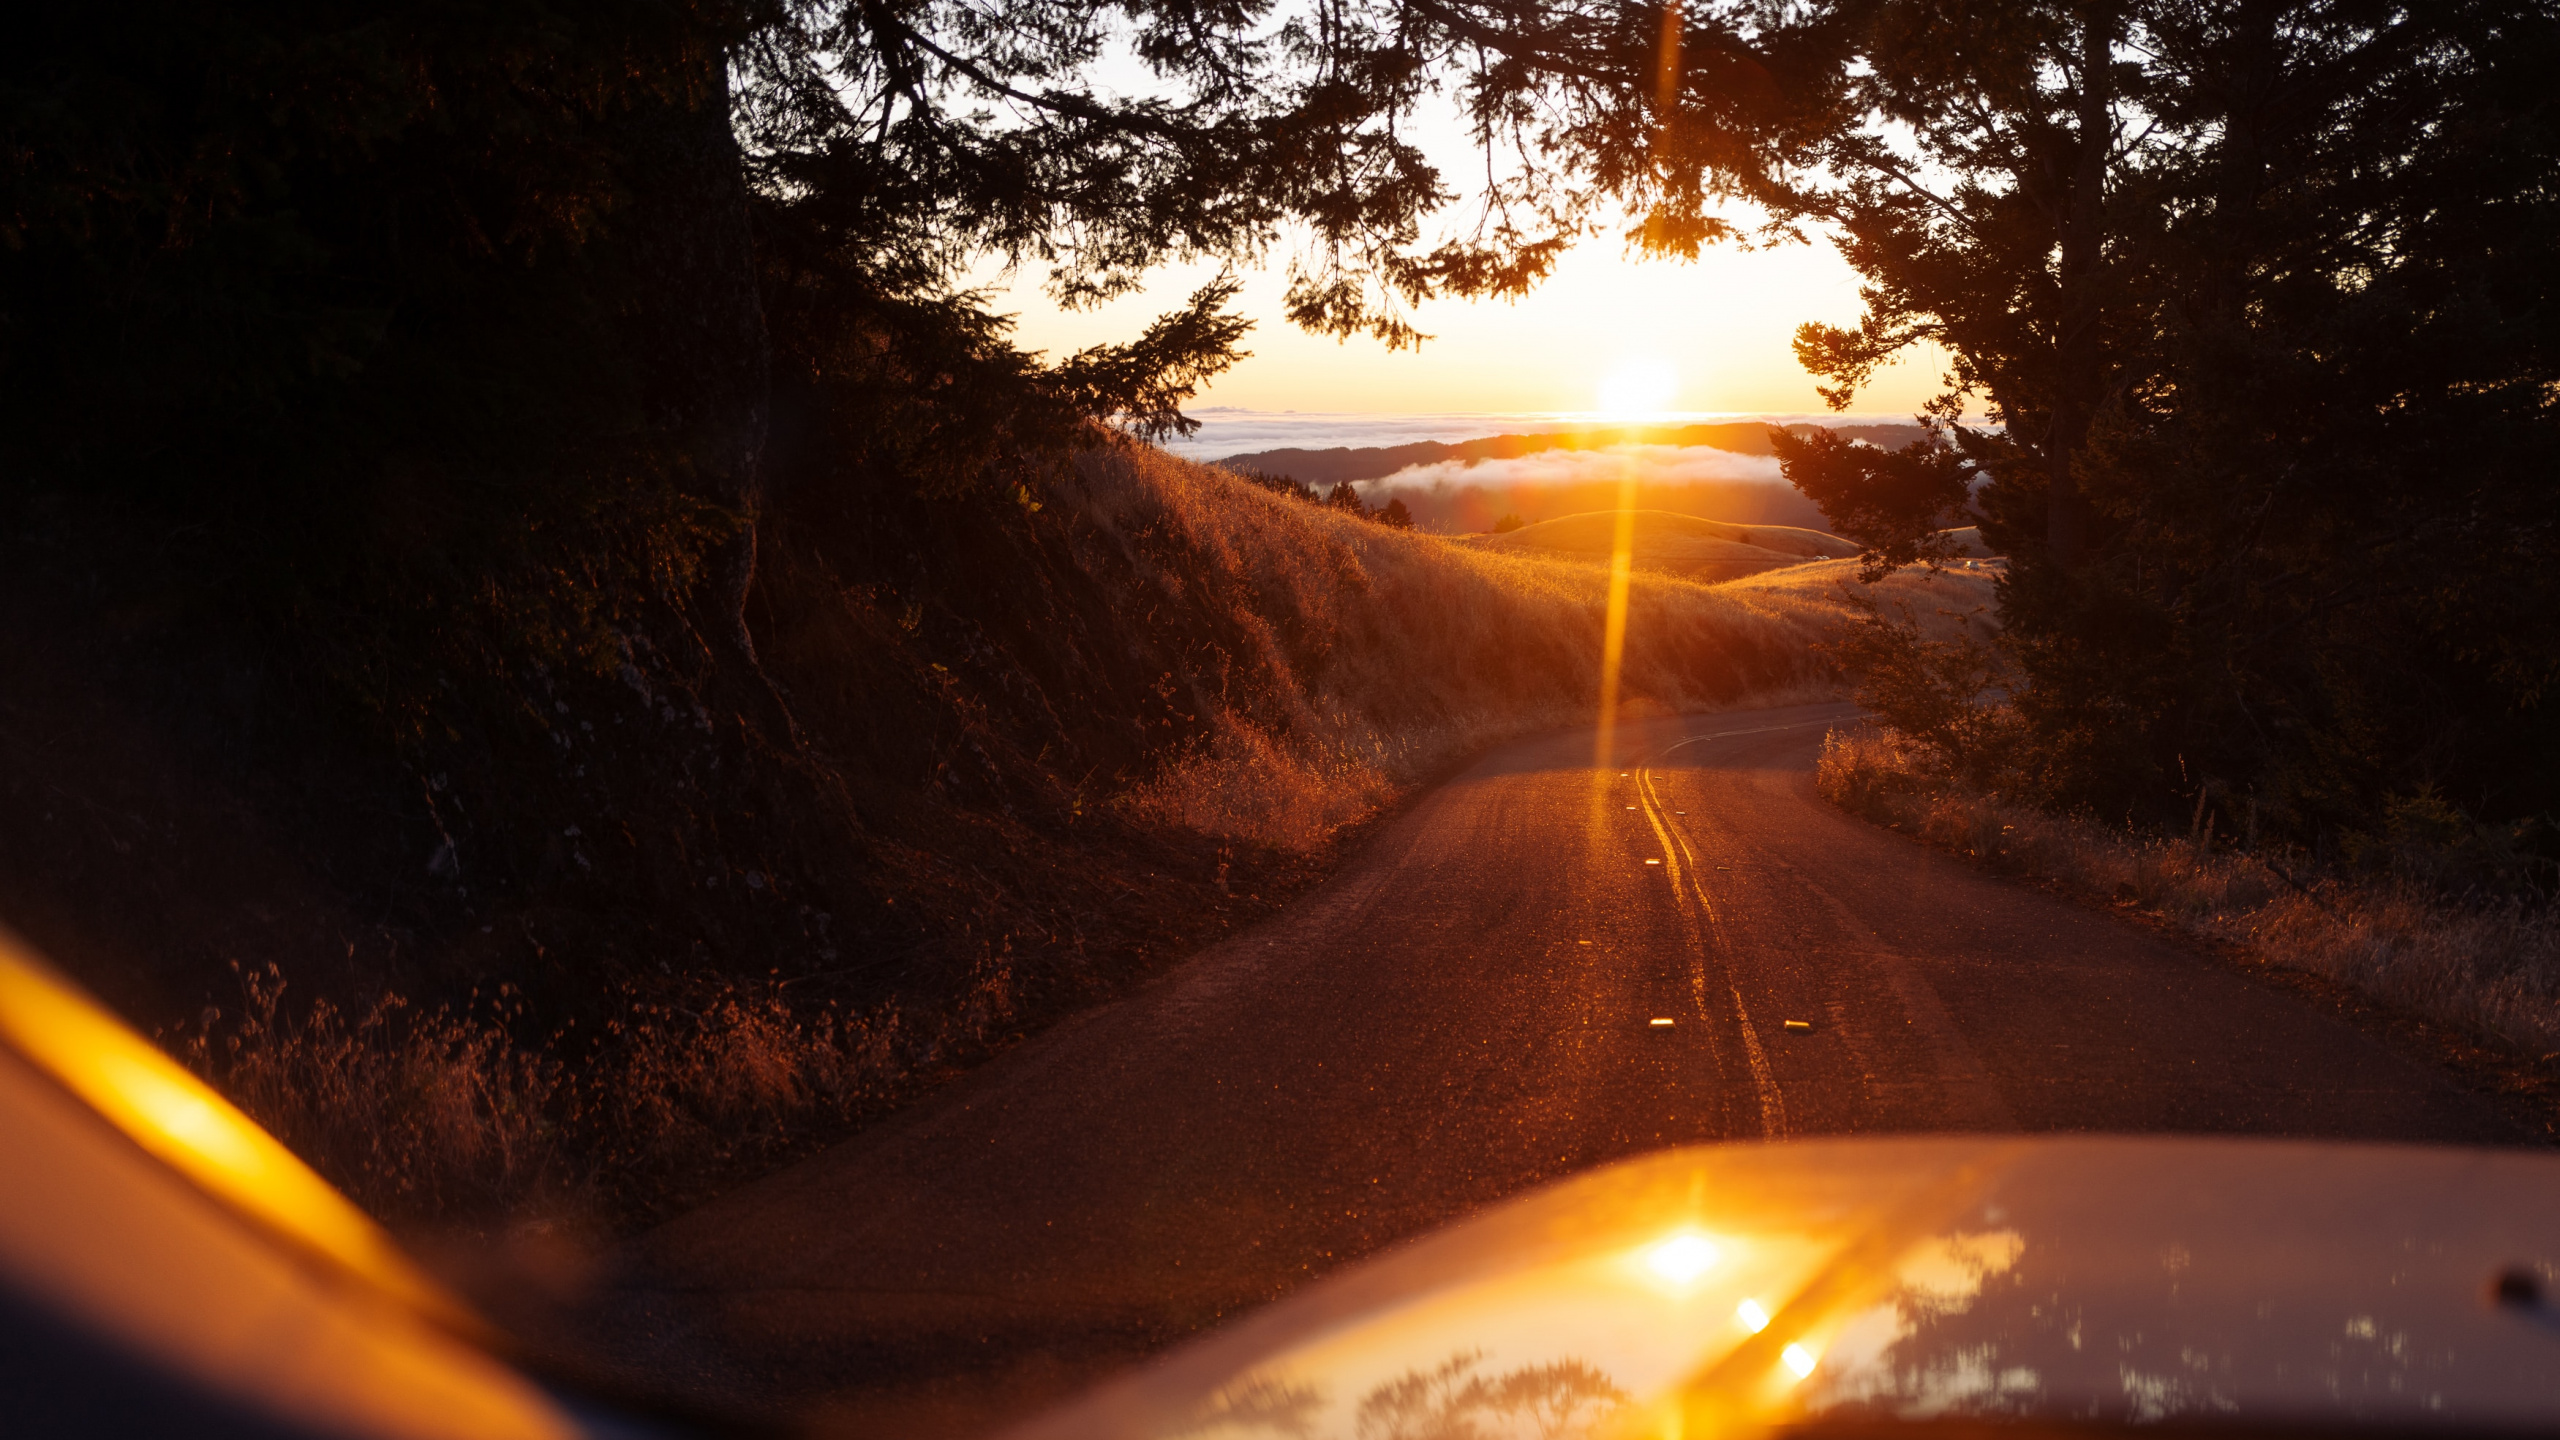 Sonnenuntergang, Sonnenlicht, Licht, Road, Hitze. Wallpaper in 2560x1440 Resolution